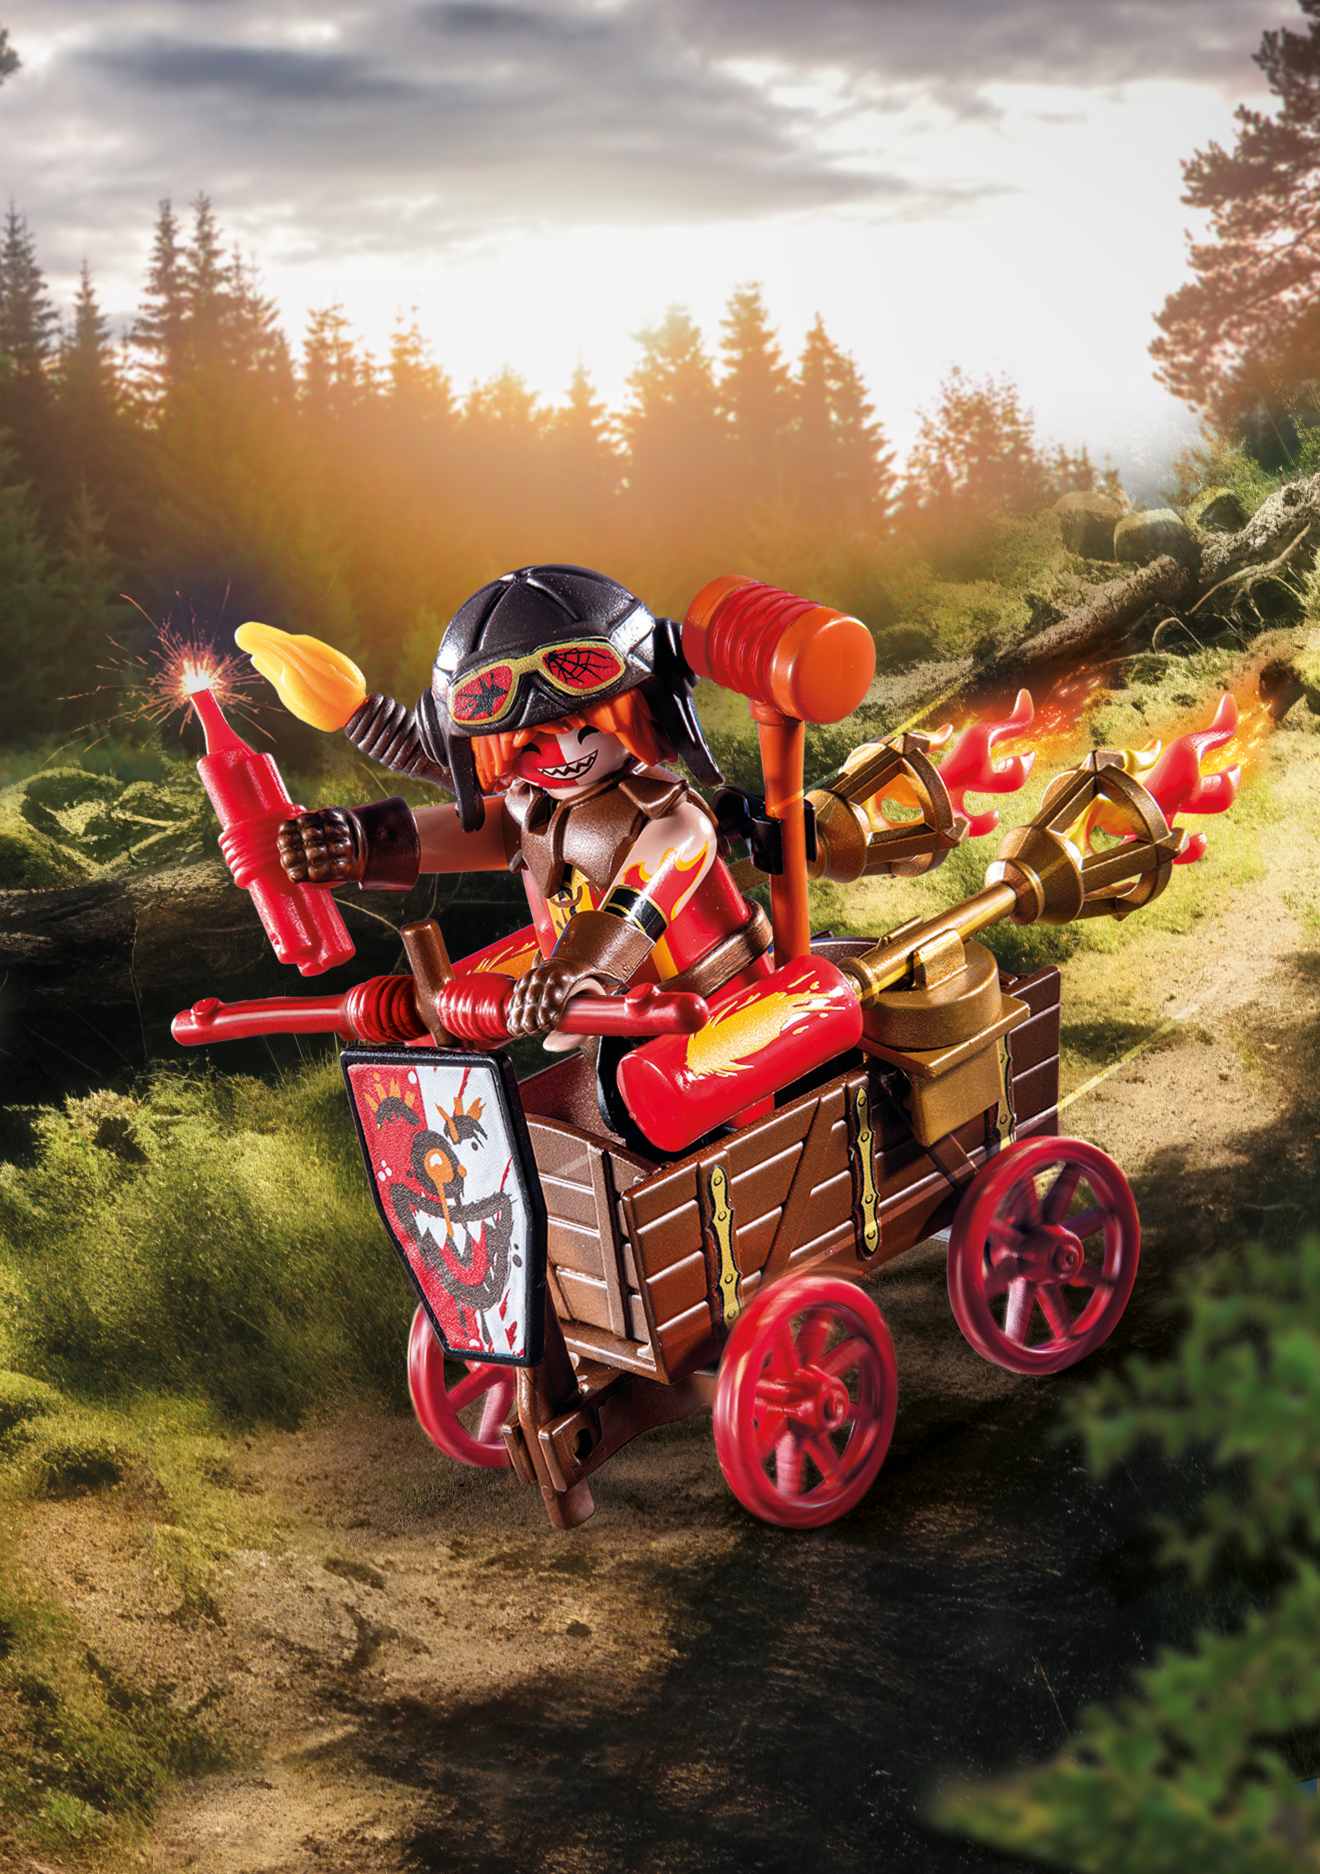 Playmobil novelmore 71486 kahboom con carro da combattimento per bambini dai 4 anni - Playmobil